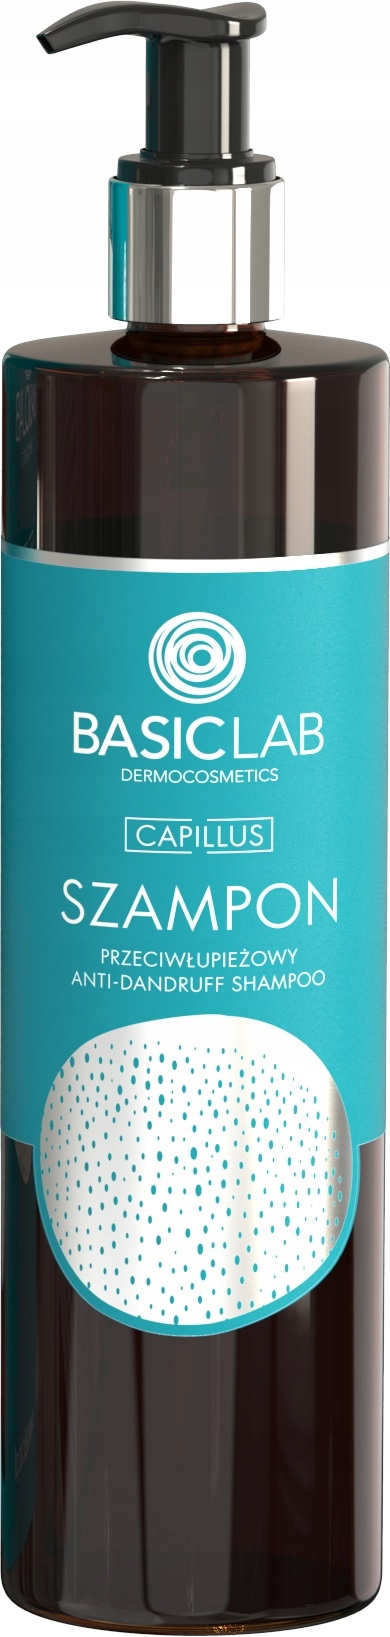 basiclab szampon przeciwłupieżowy opinie